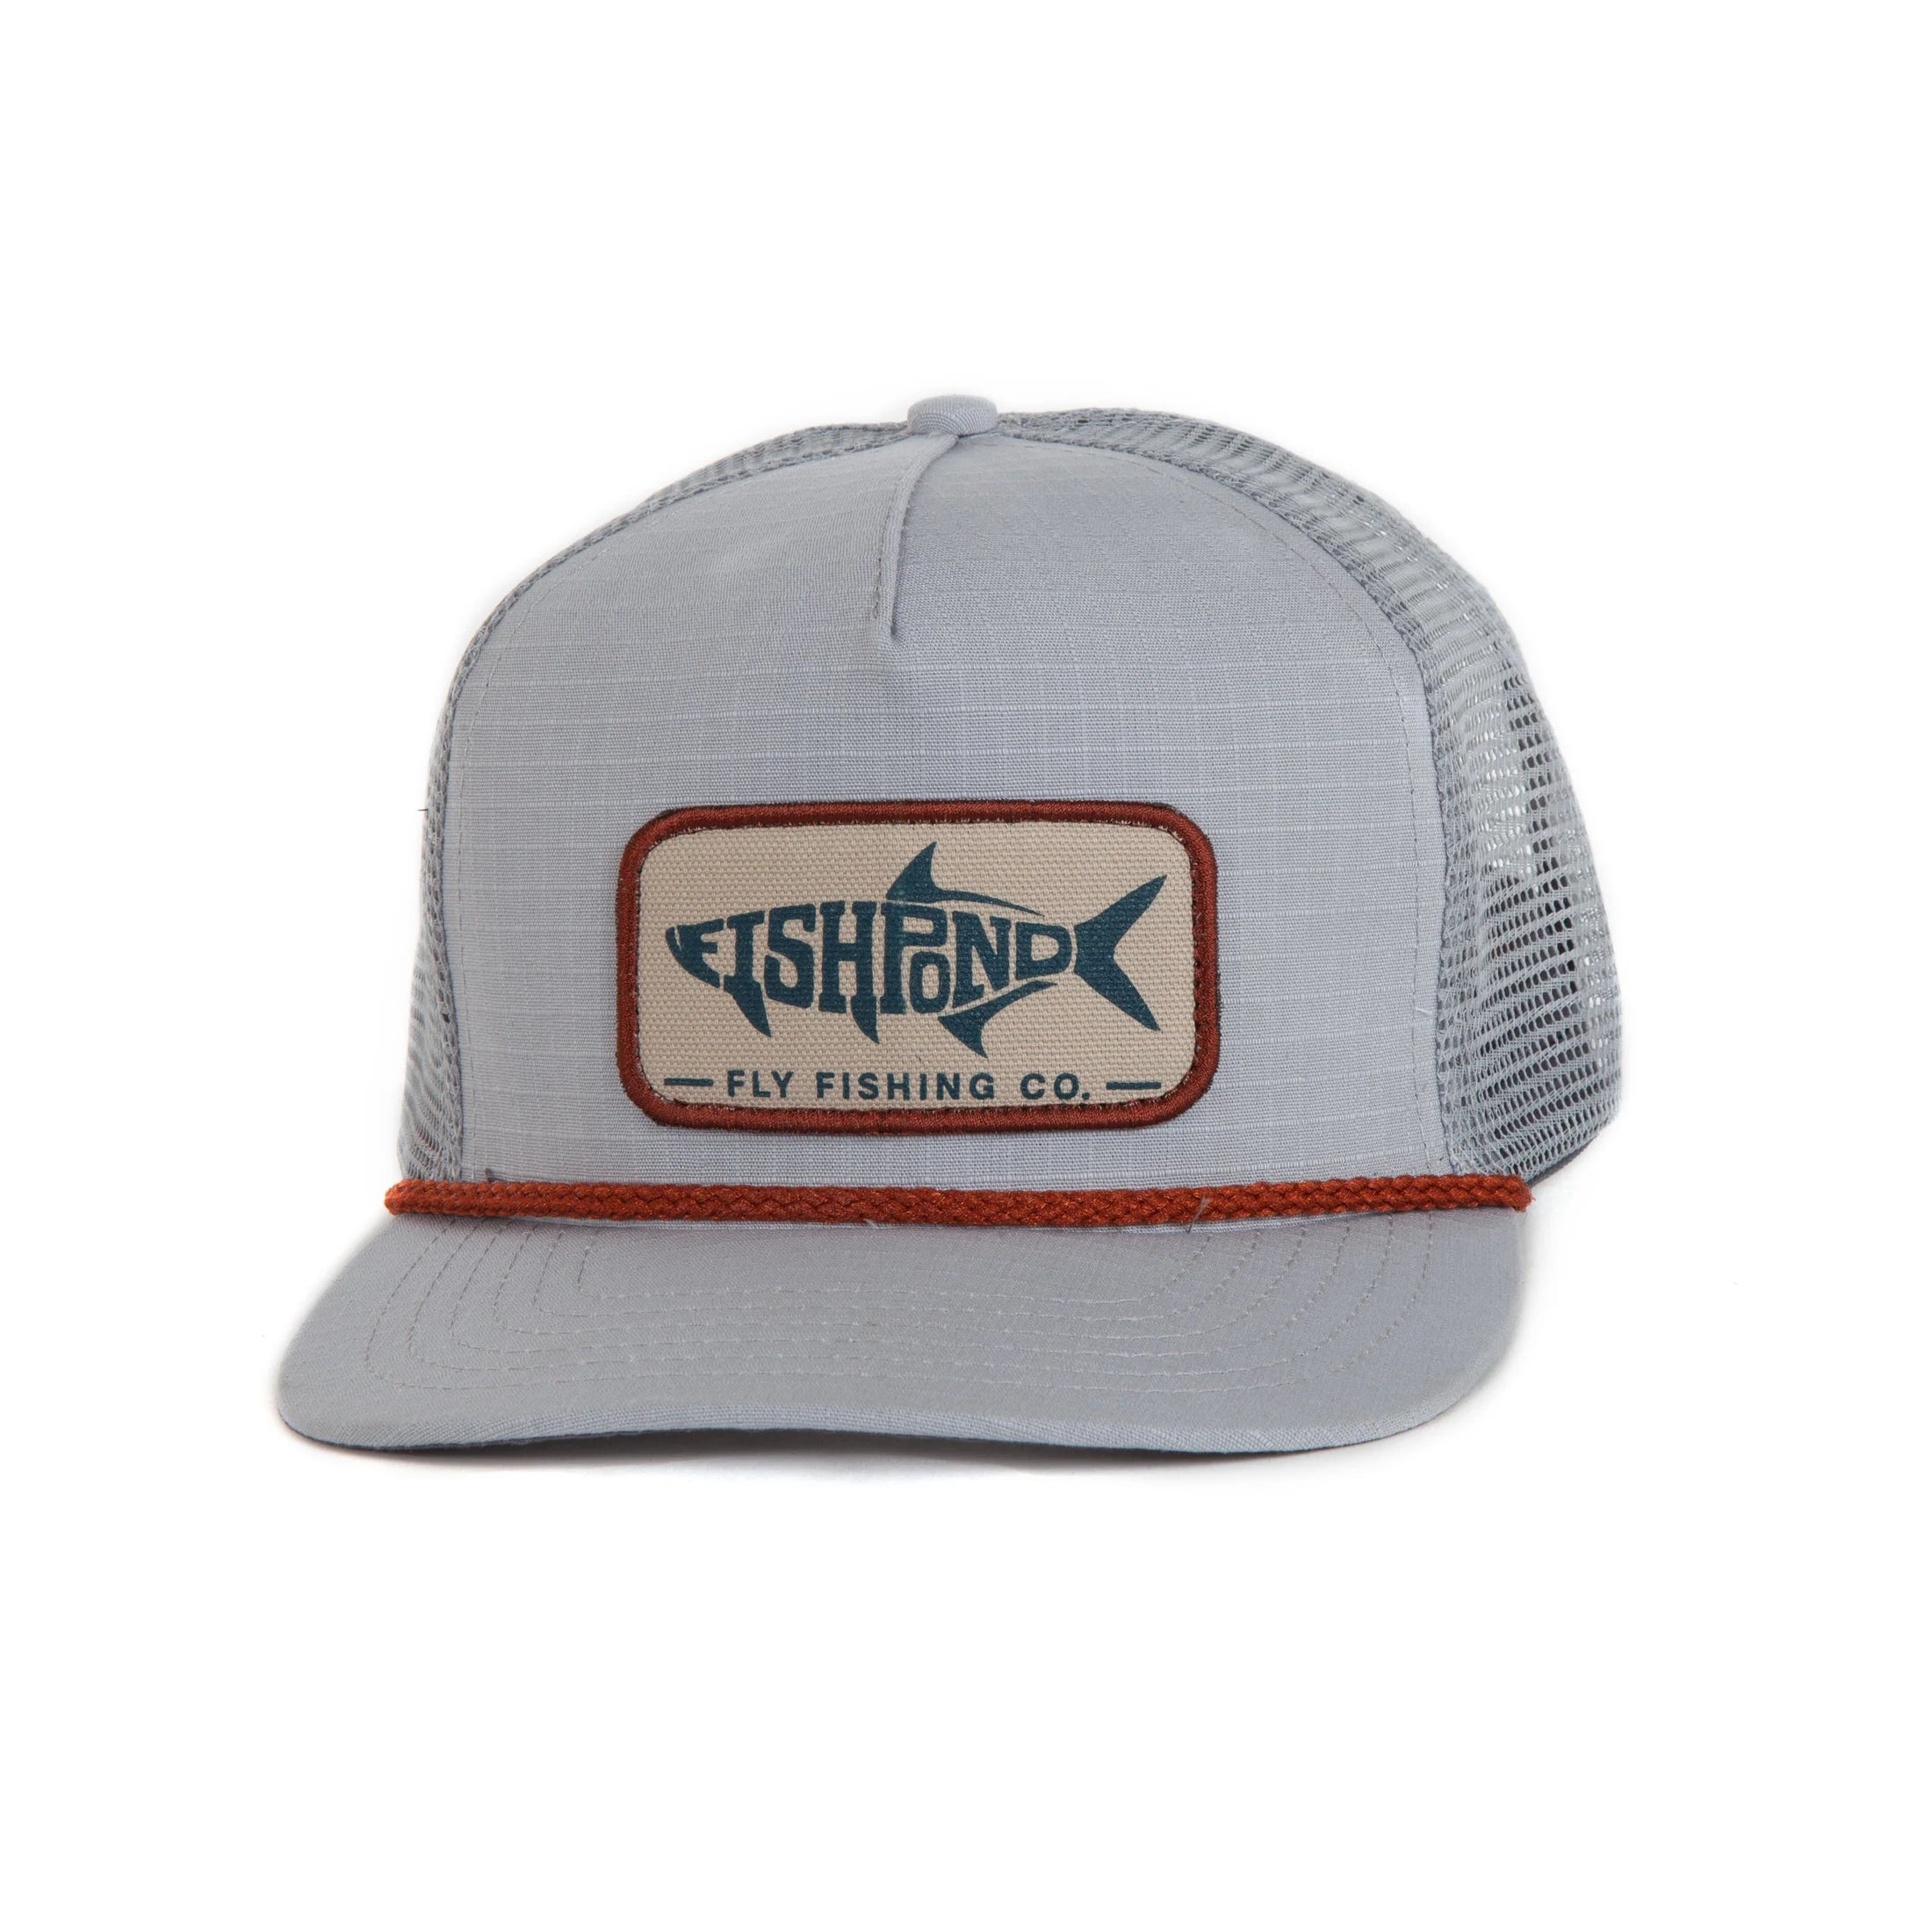 Fishpond Sabalo Trucker Hat - Overcast